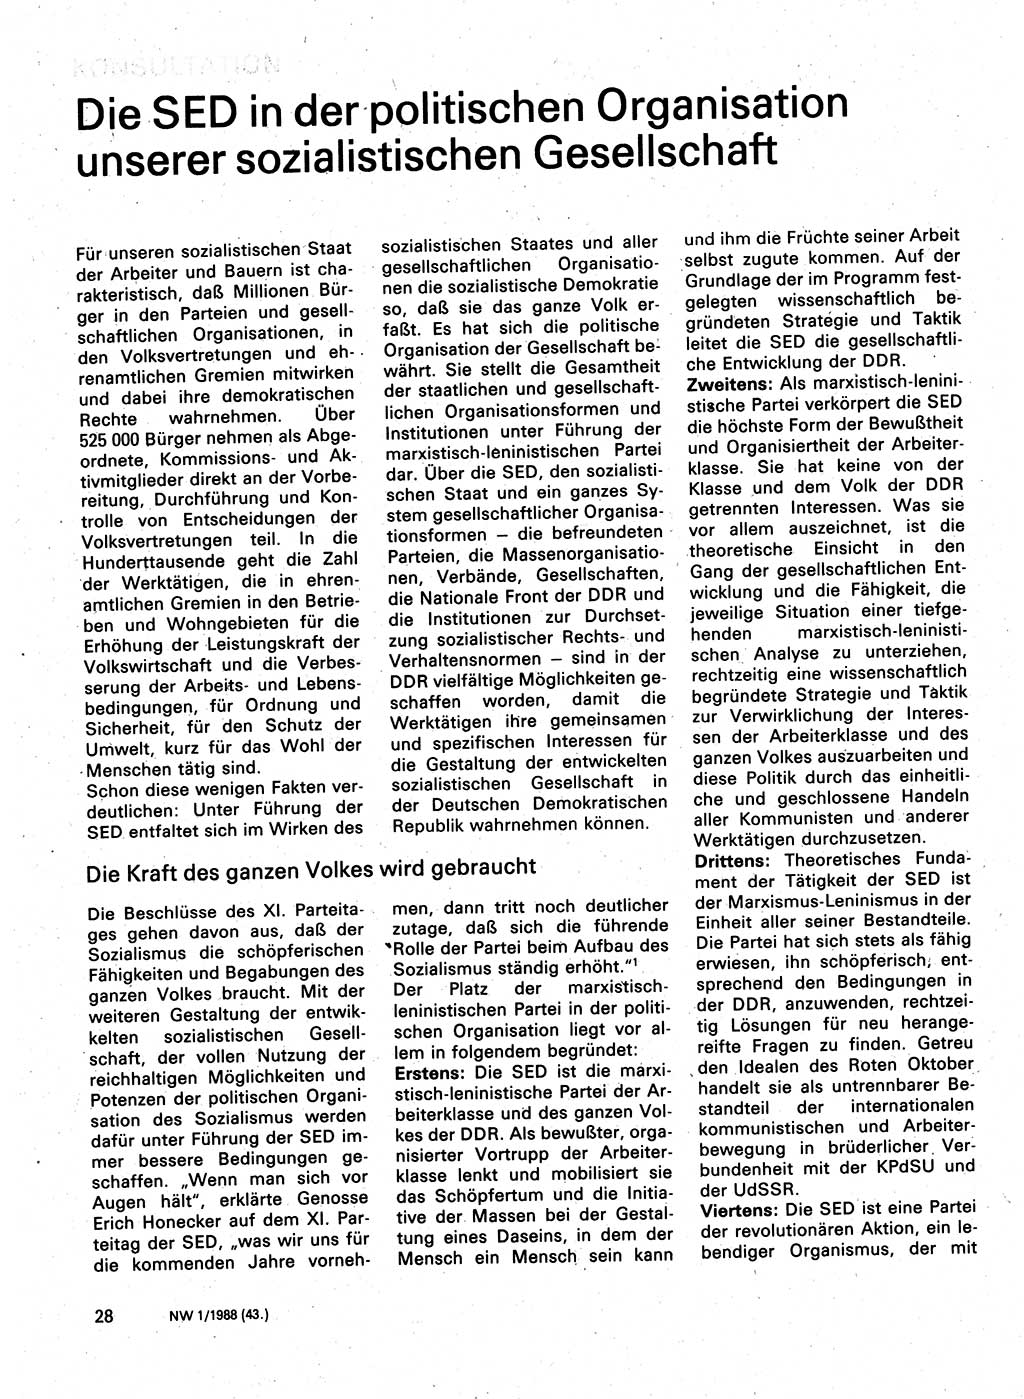 Neuer Weg (NW), Organ des Zentralkomitees (ZK) der SED (Sozialistische Einheitspartei Deutschlands) für Fragen des Parteilebens, 43. Jahrgang [Deutsche Demokratische Republik (DDR)] 1988, Seite 28 (NW ZK SED DDR 1988, S. 28)